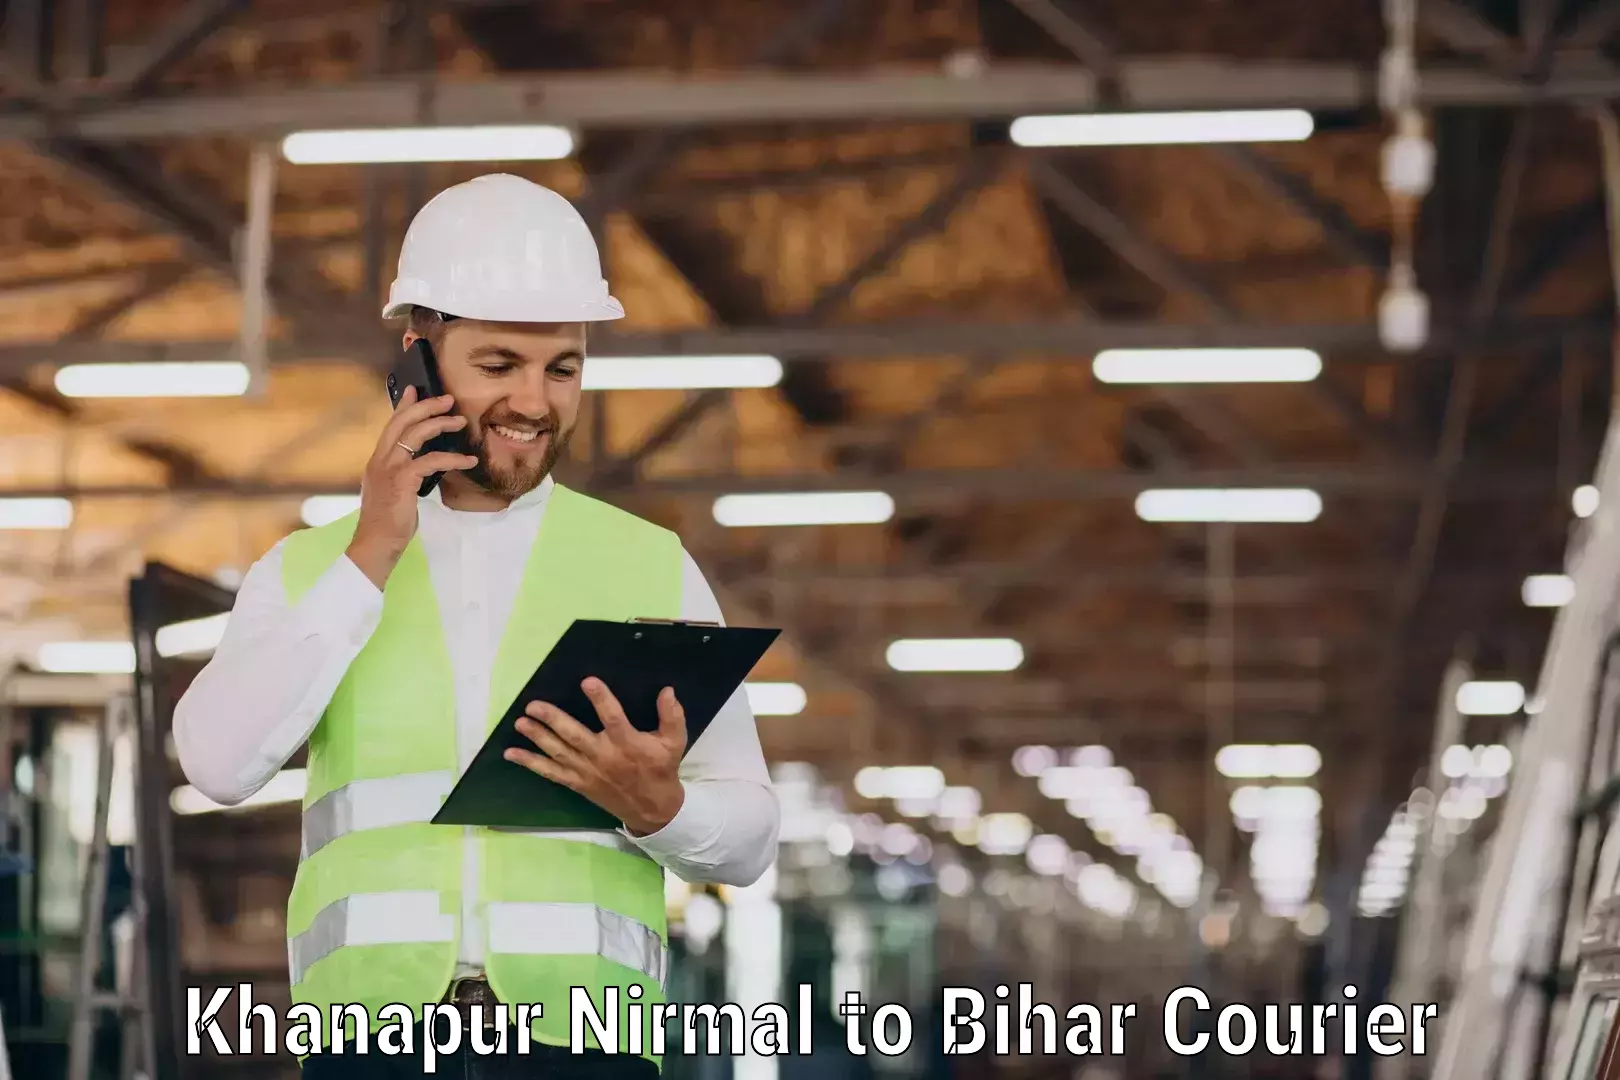 Multi-service courier options Khanapur Nirmal to Kishunganj